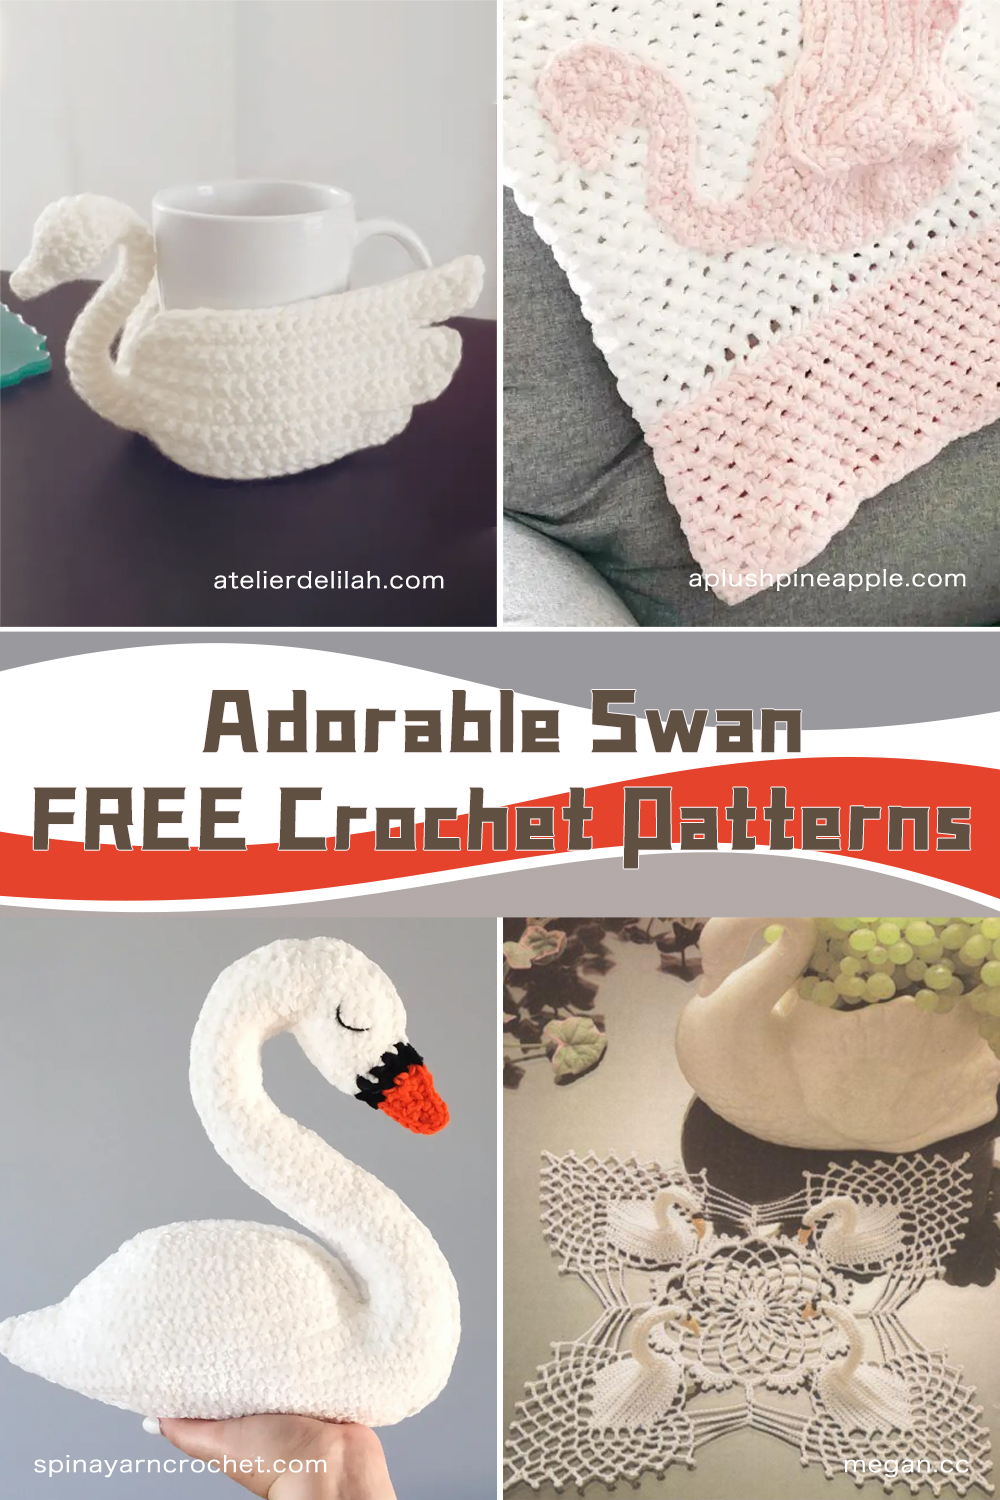 Swan FREE Crochet Patterns 